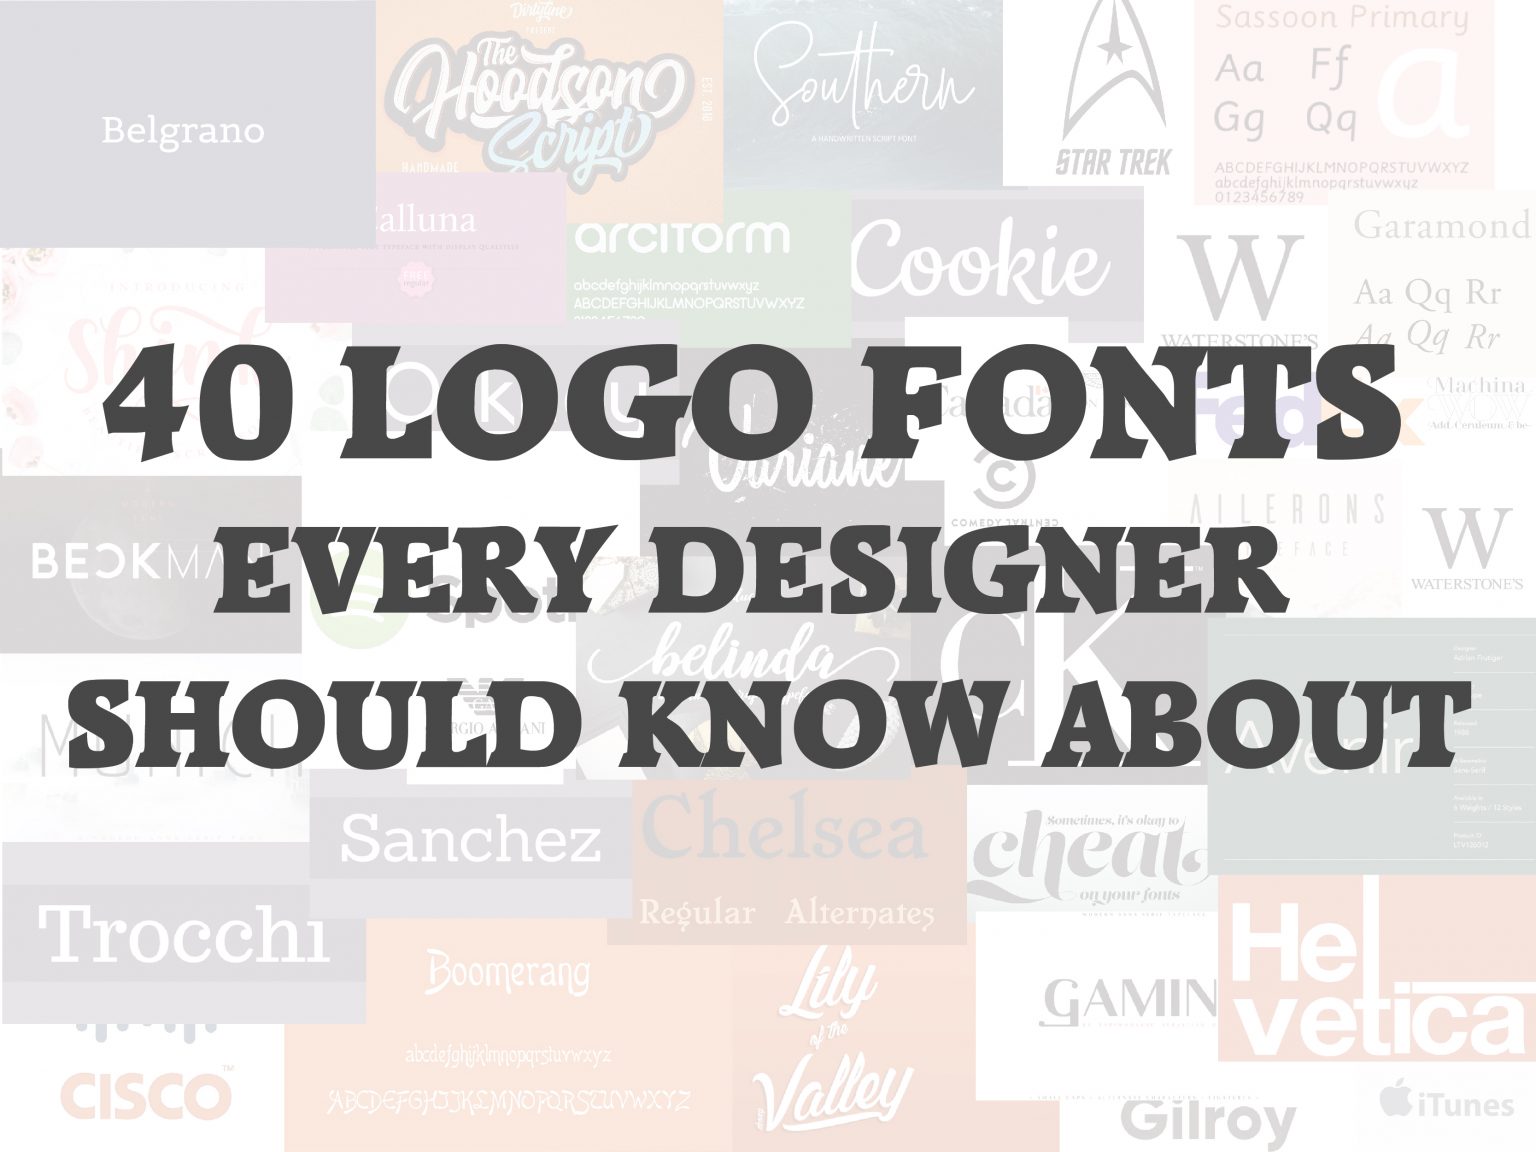 40 Logo Fonts Every Designer Should Know About | Design Blog